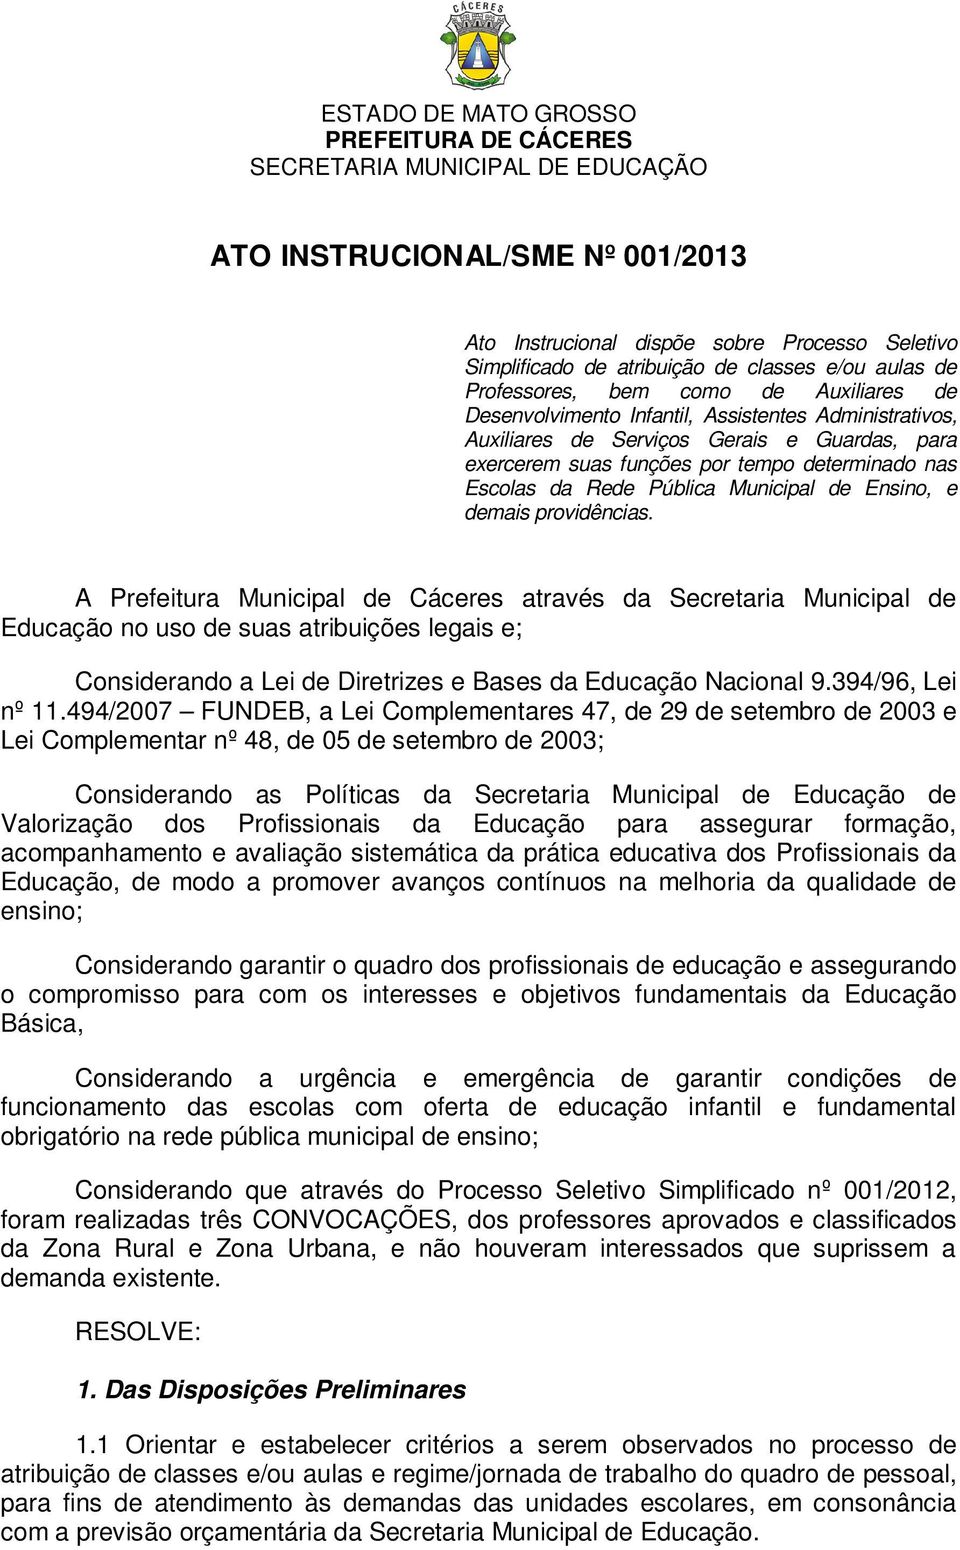 A Prefeitura Municipal de Cáceres através da Secretaria Municipal de Educação no uso de suas atribuições legais e; Considerando a Lei de Diretrizes e Bases da Educação Nacional 9.394/96, Lei nº 11.